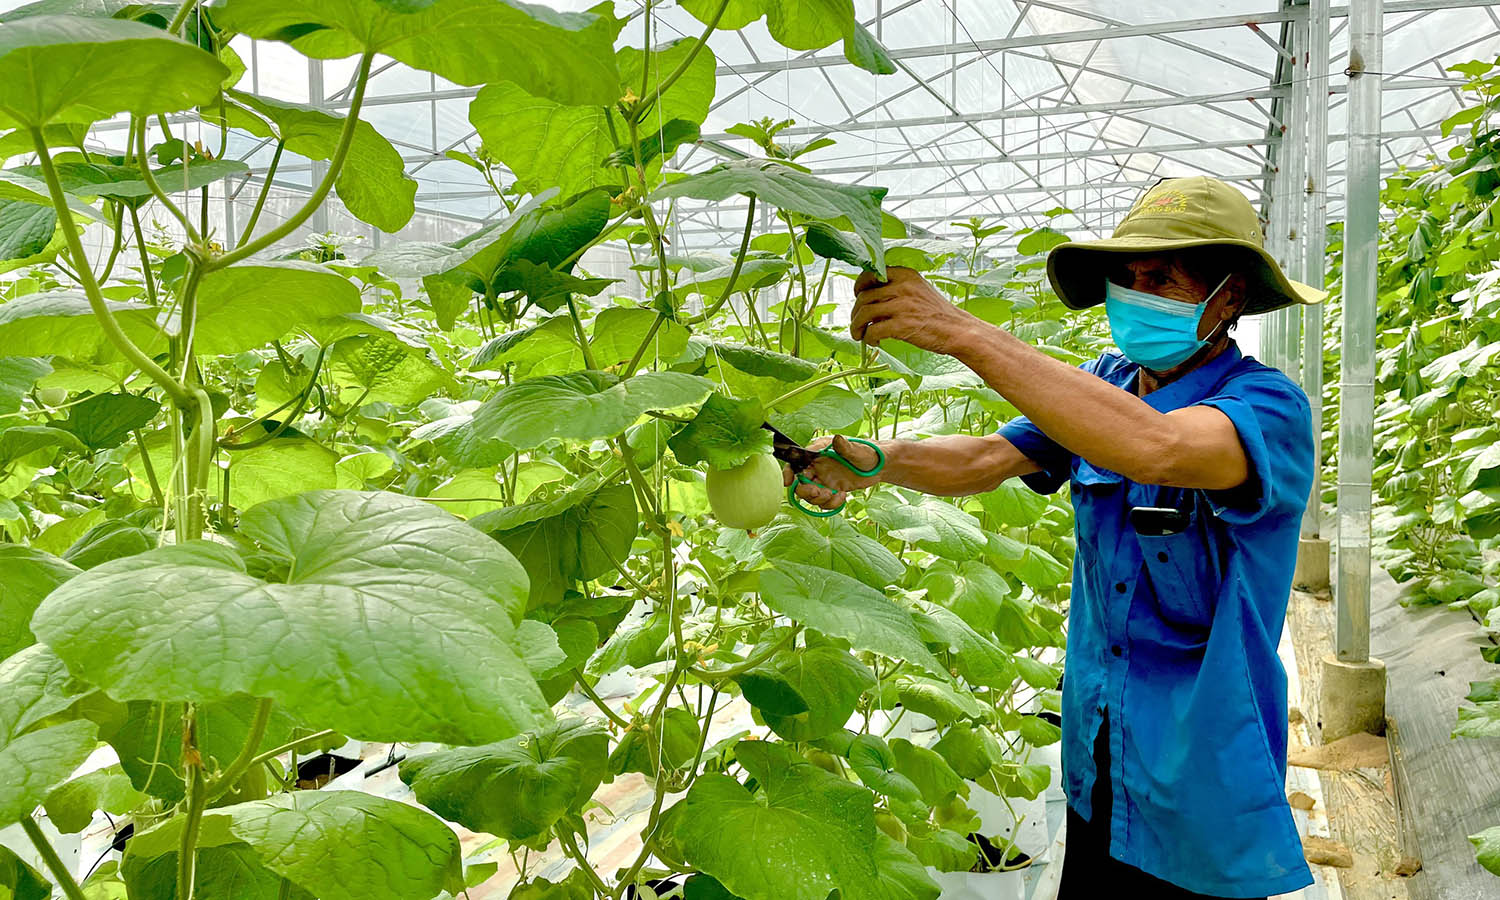 Mô hình trồng dưa lưới trong nhà màng đem lại thu nhập ổn định cho gia đình anh Phạm Ngọc Khiên ở thôn Bắc Sơn, xã Thanh Hóa (Tuyên Hóa).